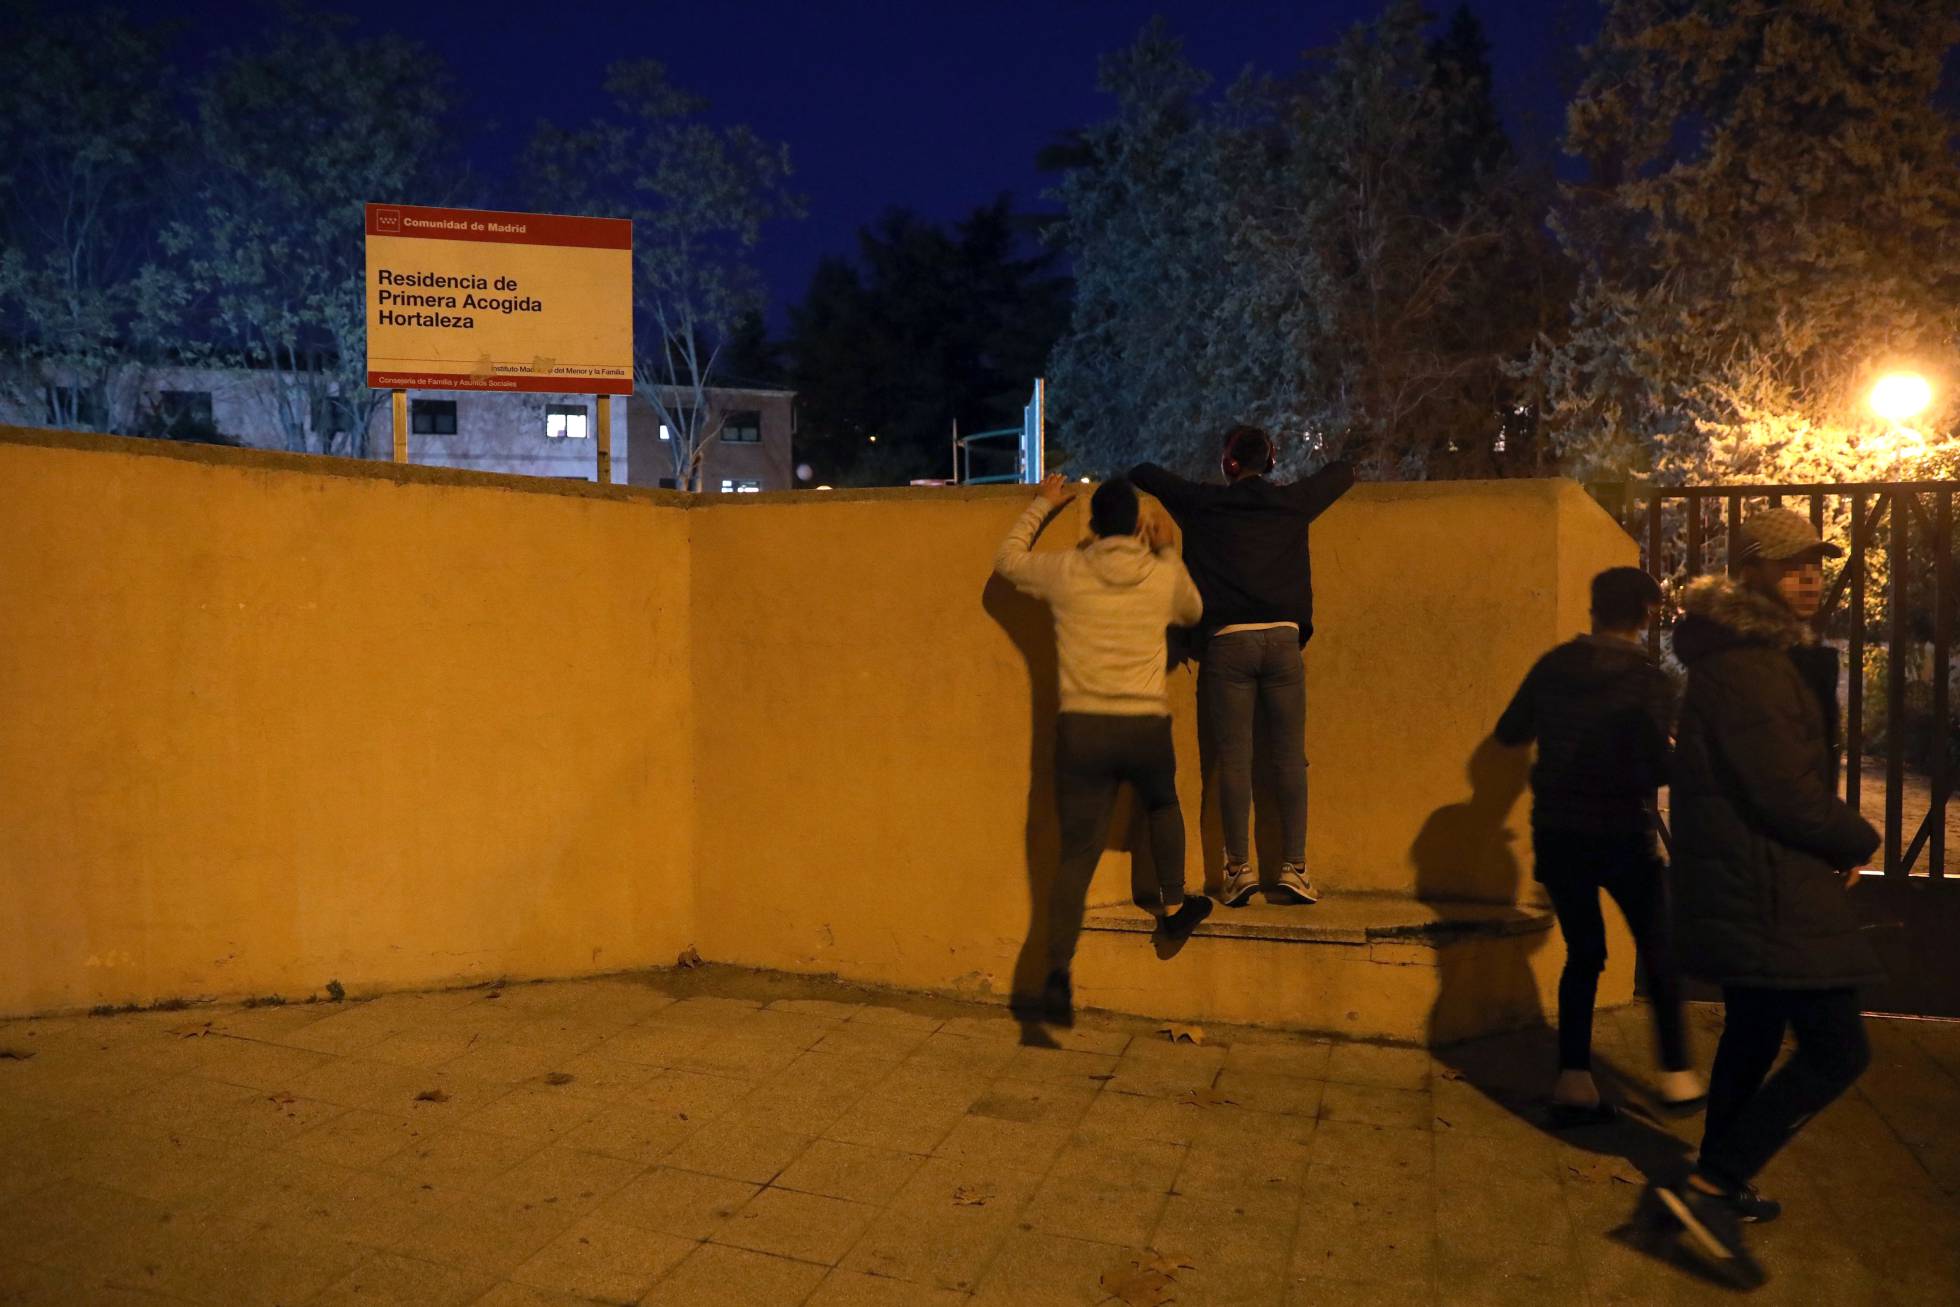 Los inmigrantes acogidos en el centro de menores de Carmona, fuera de control 1544560718_786076_1544561131_noticia_normal_recorte1